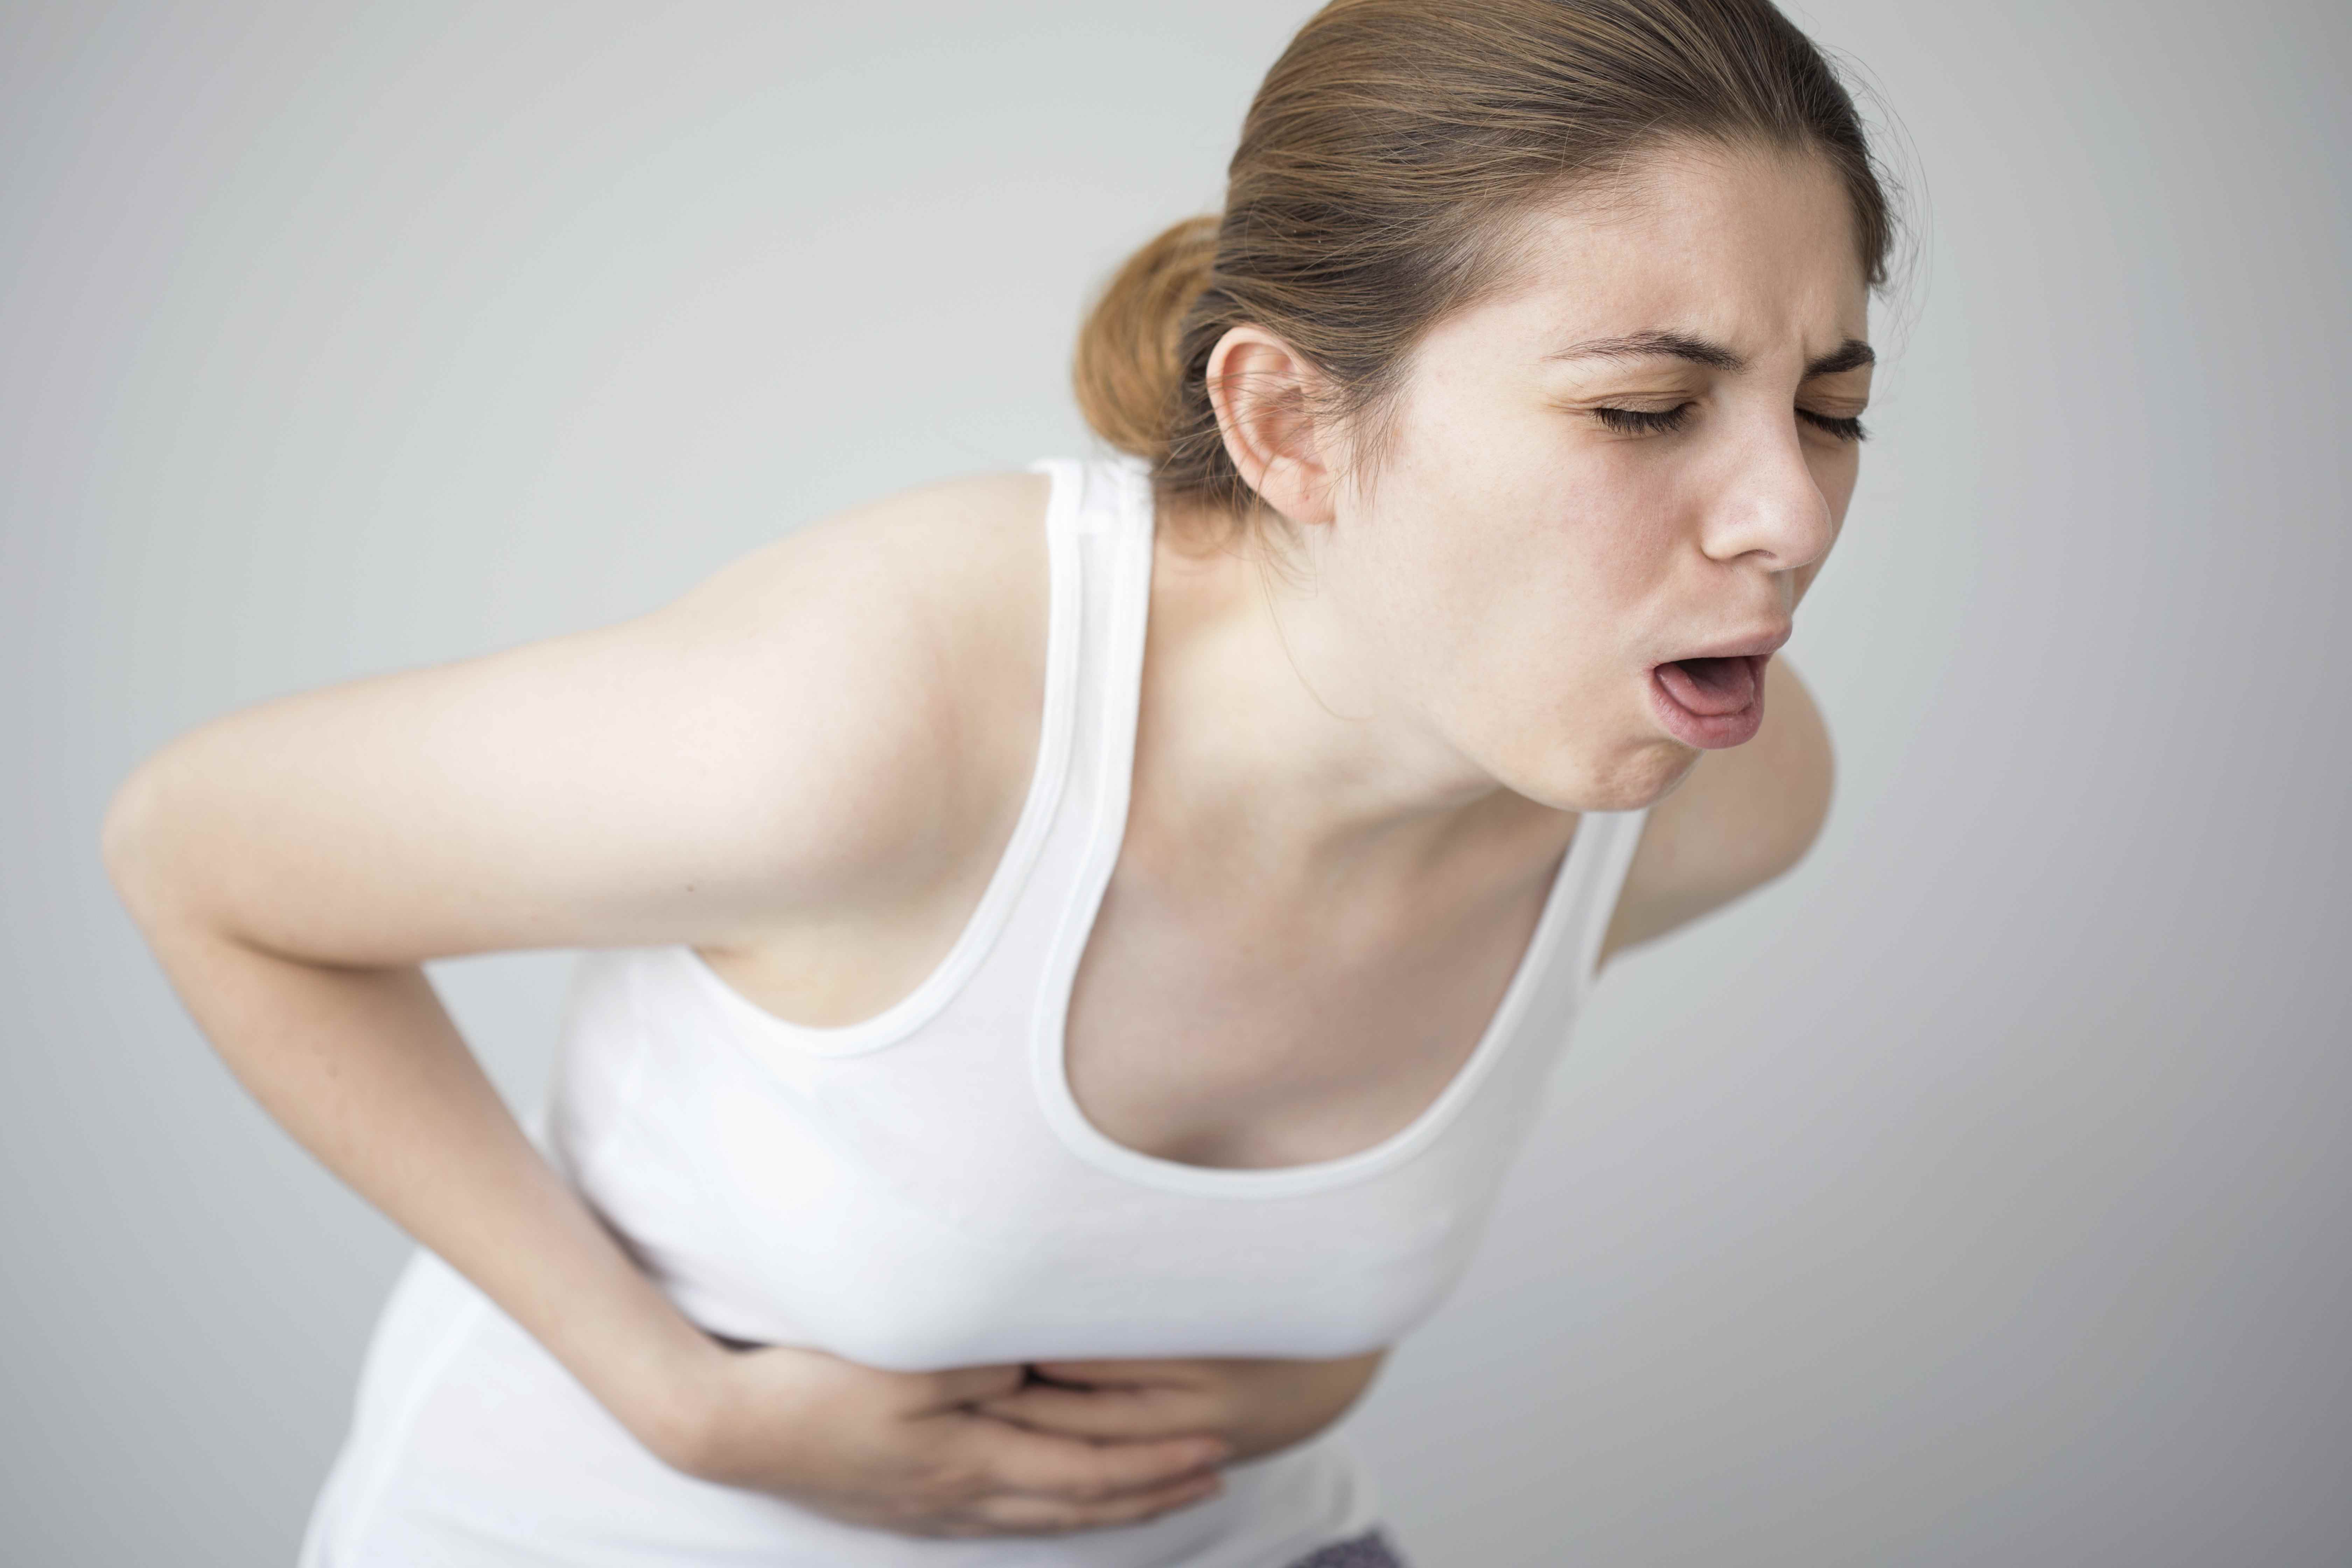 服用罗红霉素胶囊可能出现腹痛腹泻